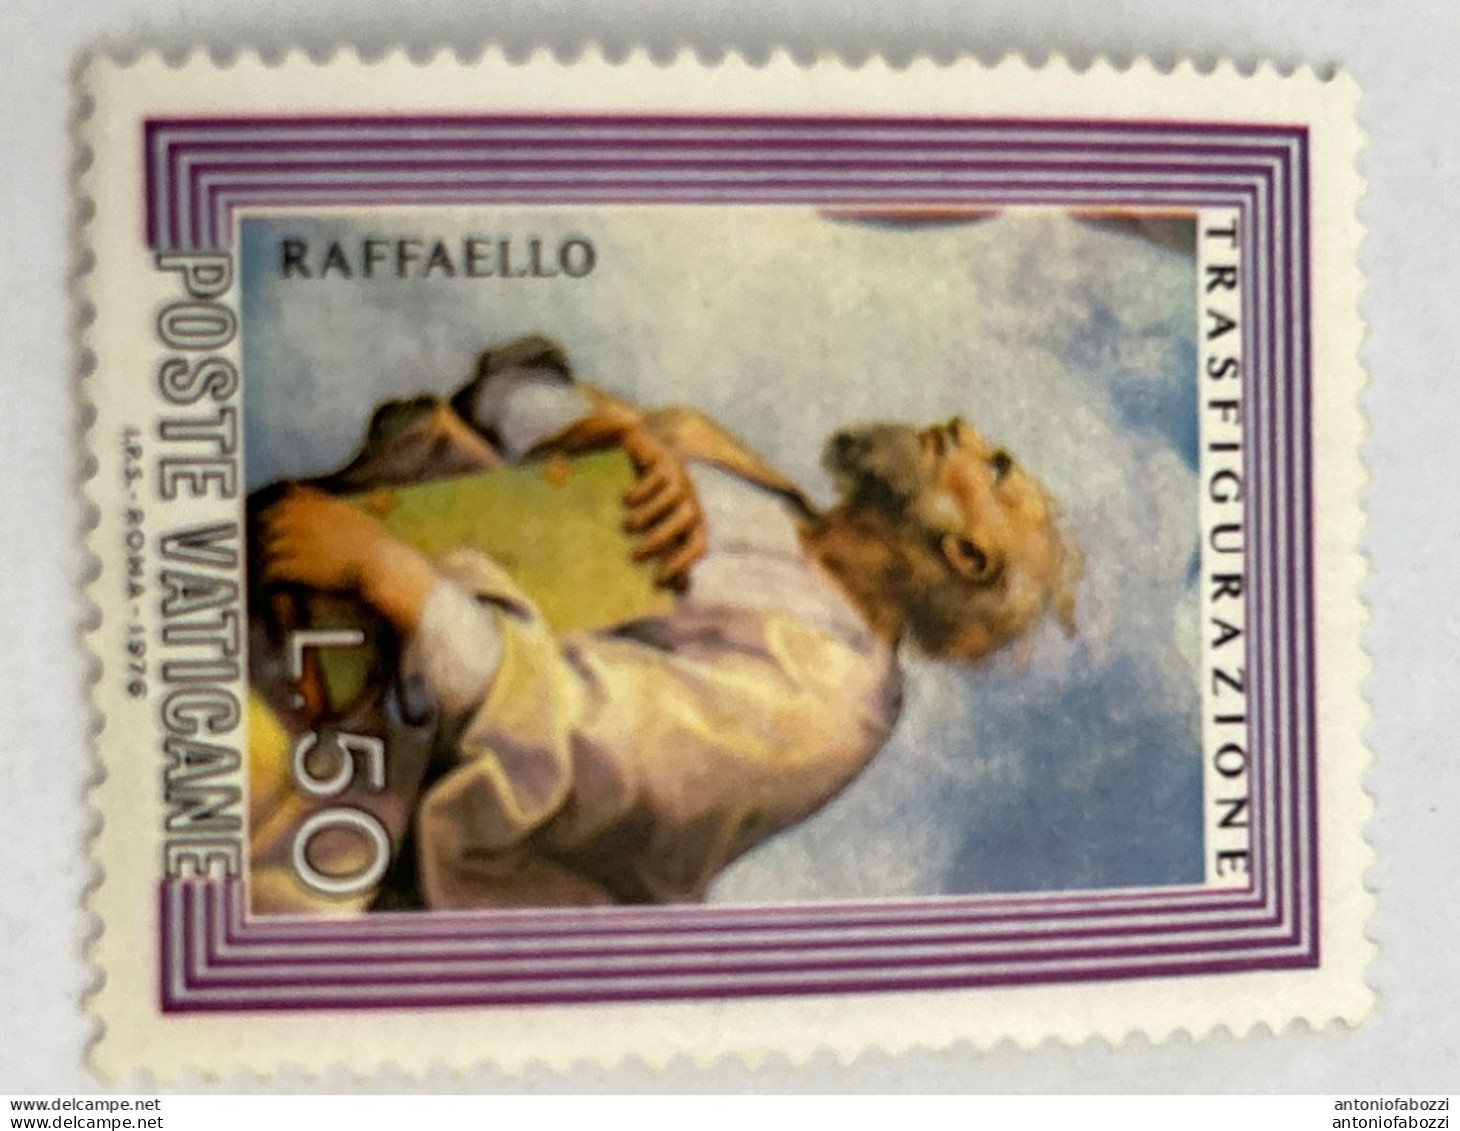 Interessante selezione di francobolli usati in ottimo stato (vedi foto), (nuovi ed usati) di buon valore filatelico